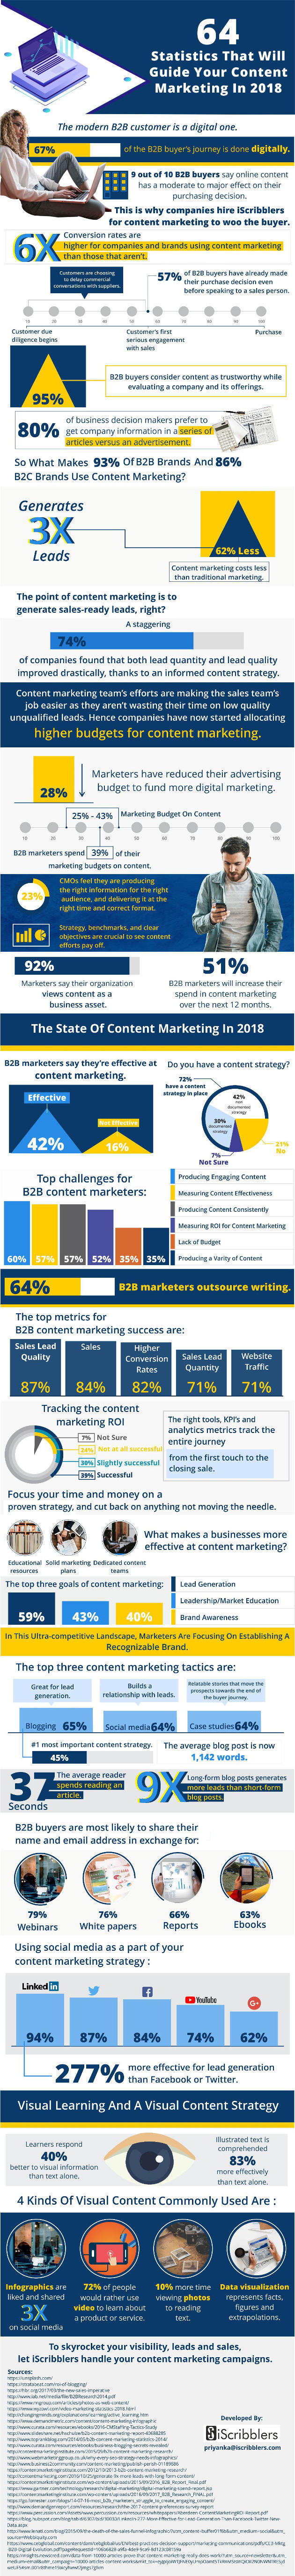 infographie sur les statistiques de content marketing